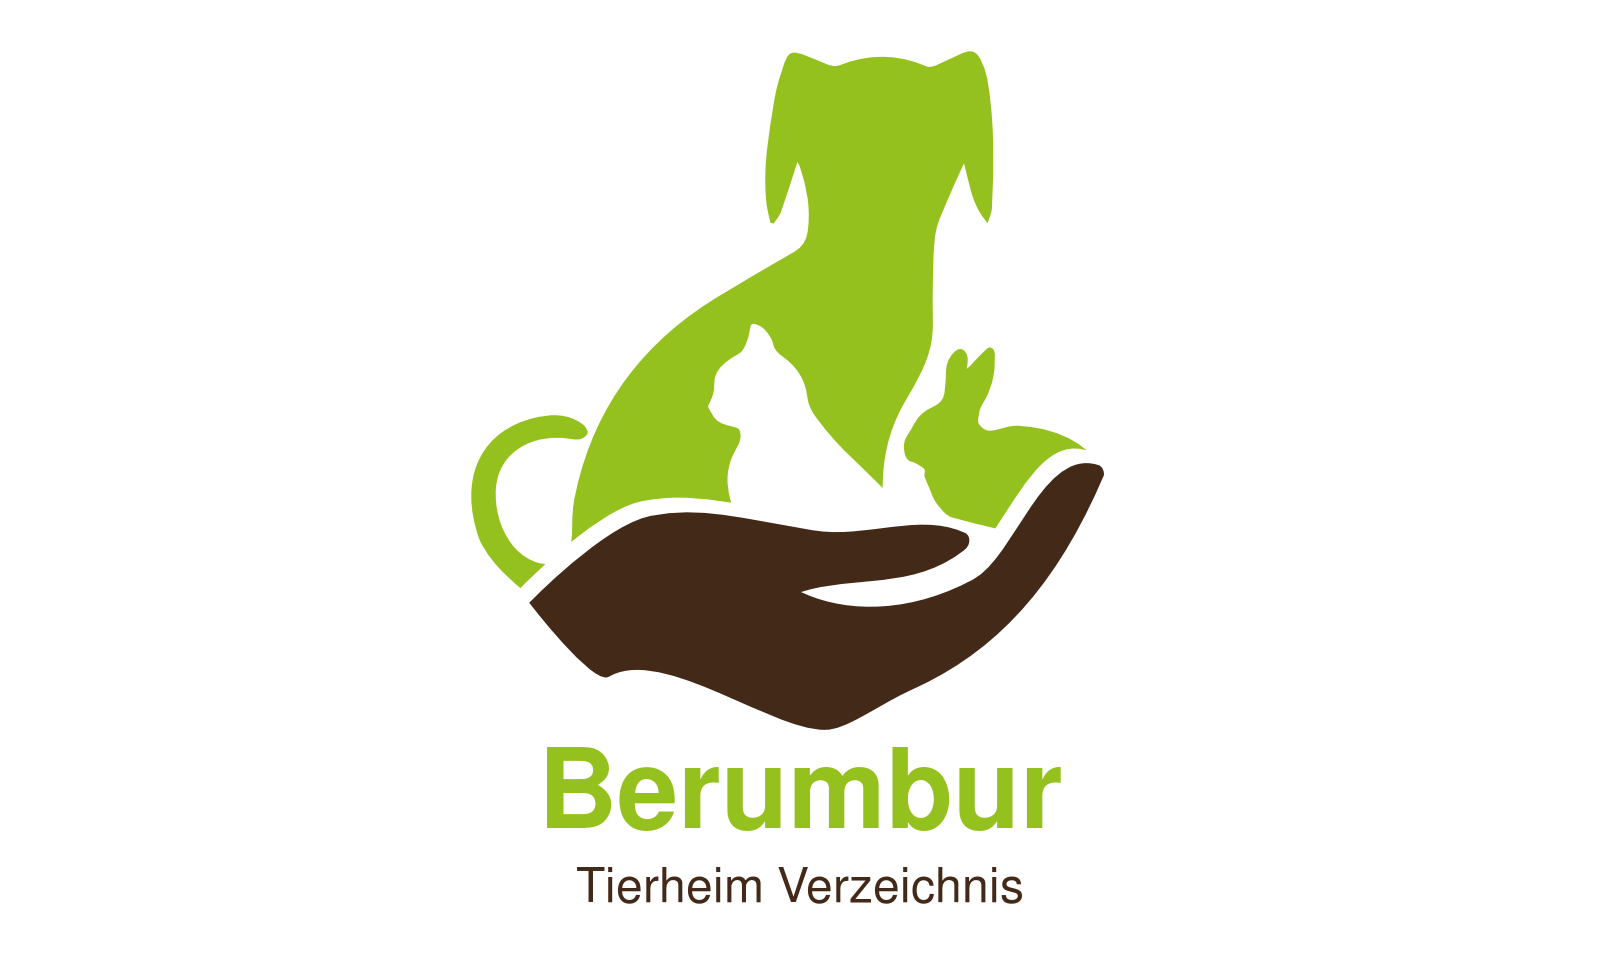 Tierheim Berumbur